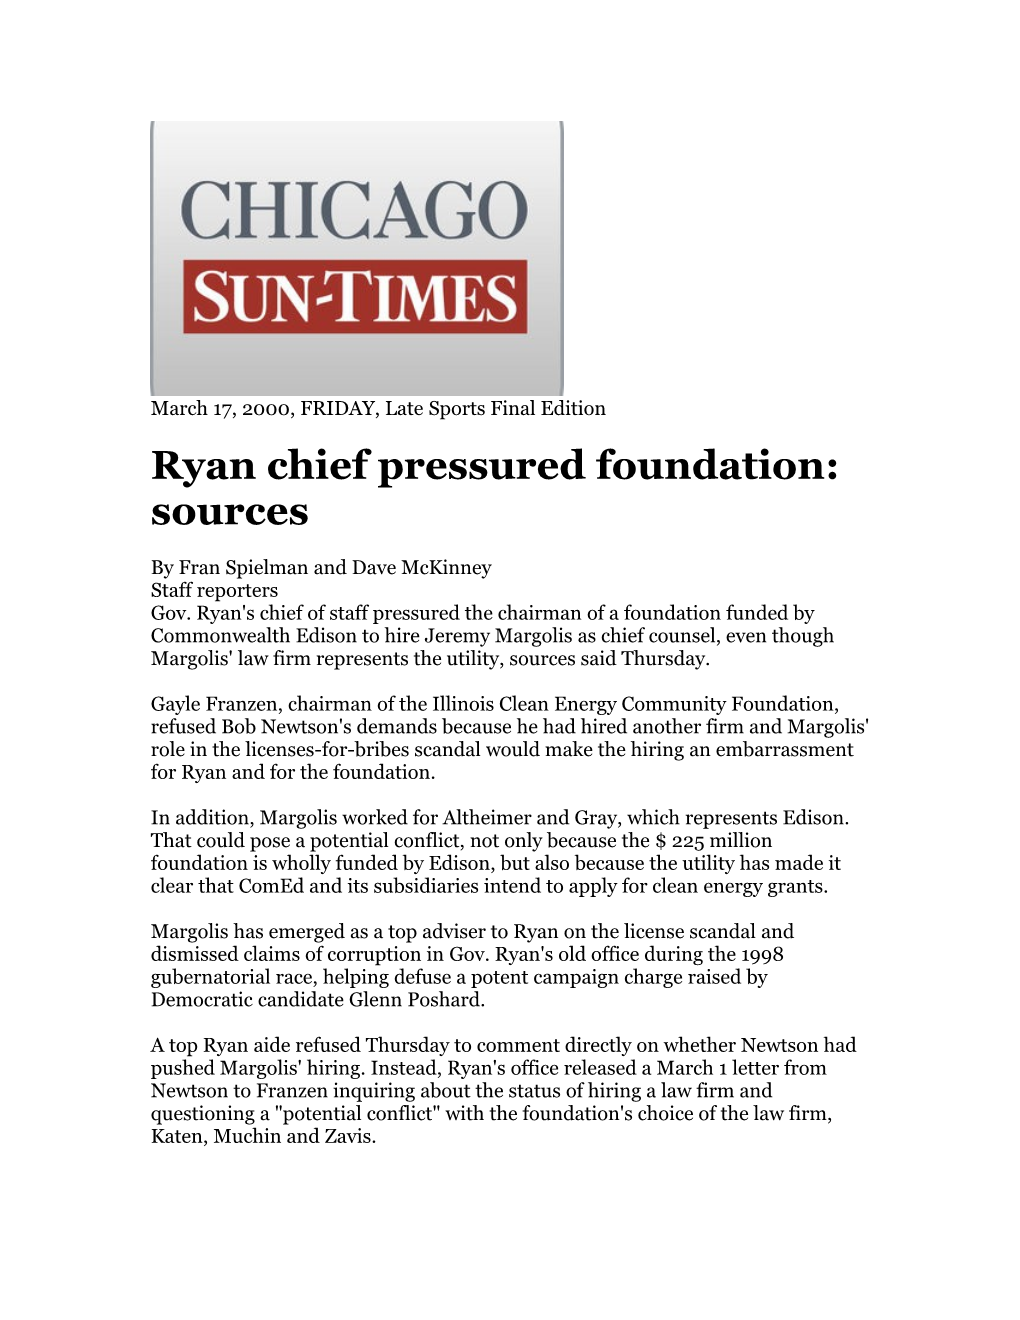 Ryan Chief Pressured Foundation: Sources